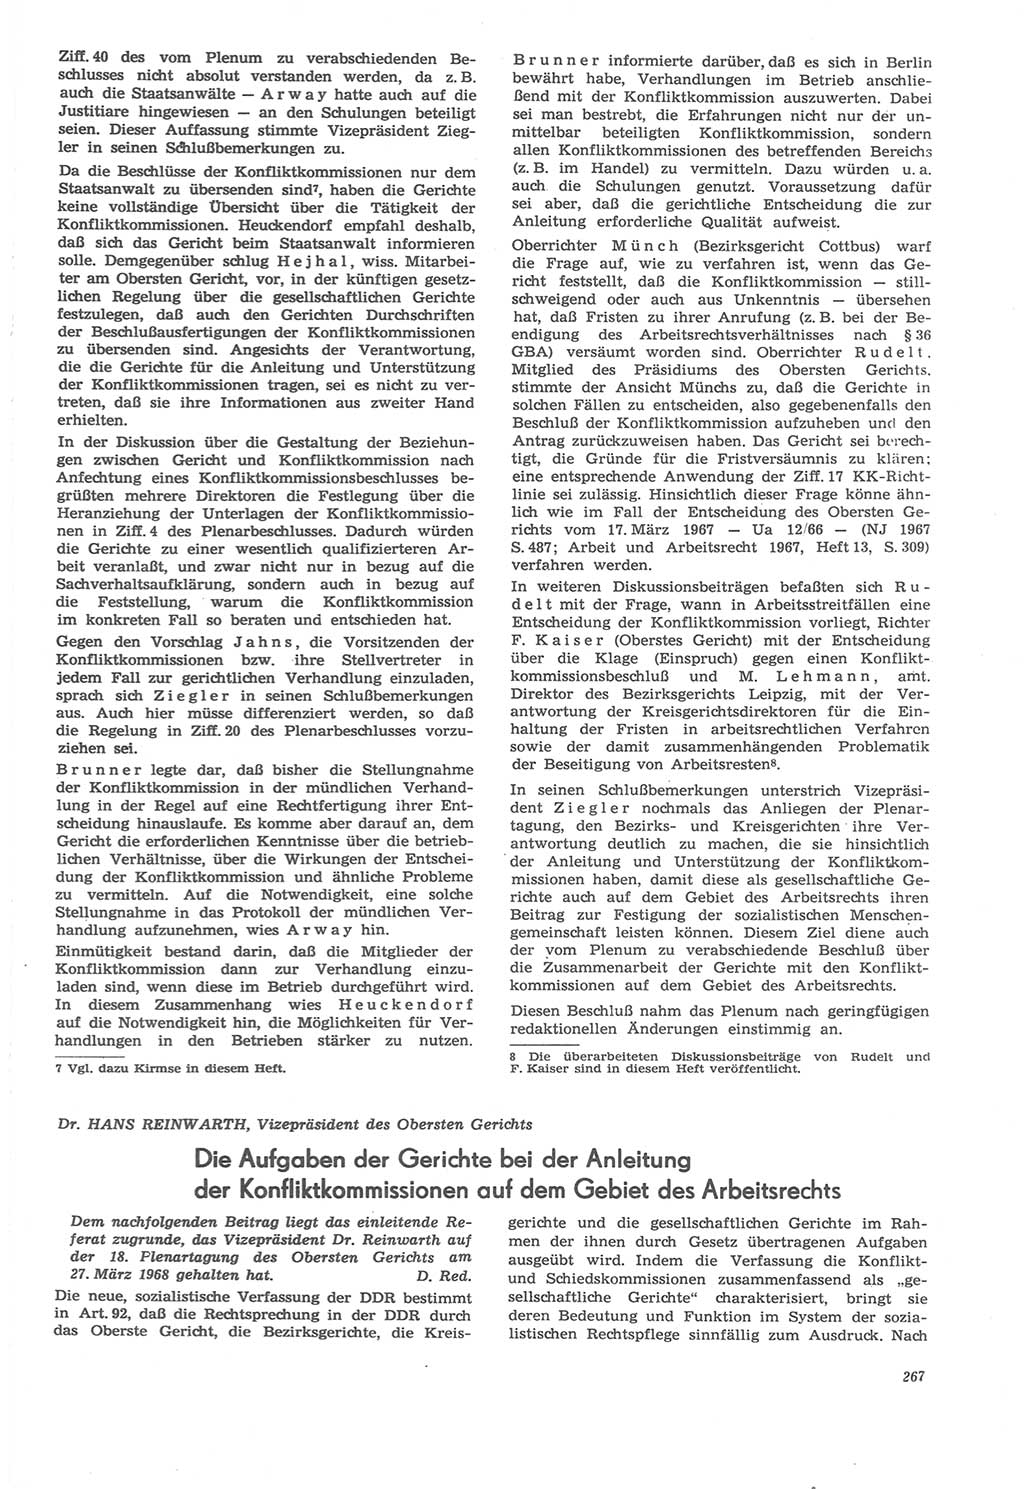 Neue Justiz (NJ), Zeitschrift für Recht und Rechtswissenschaft [Deutsche Demokratische Republik (DDR)], 22. Jahrgang 1968, Seite 267 (NJ DDR 1968, S. 267)